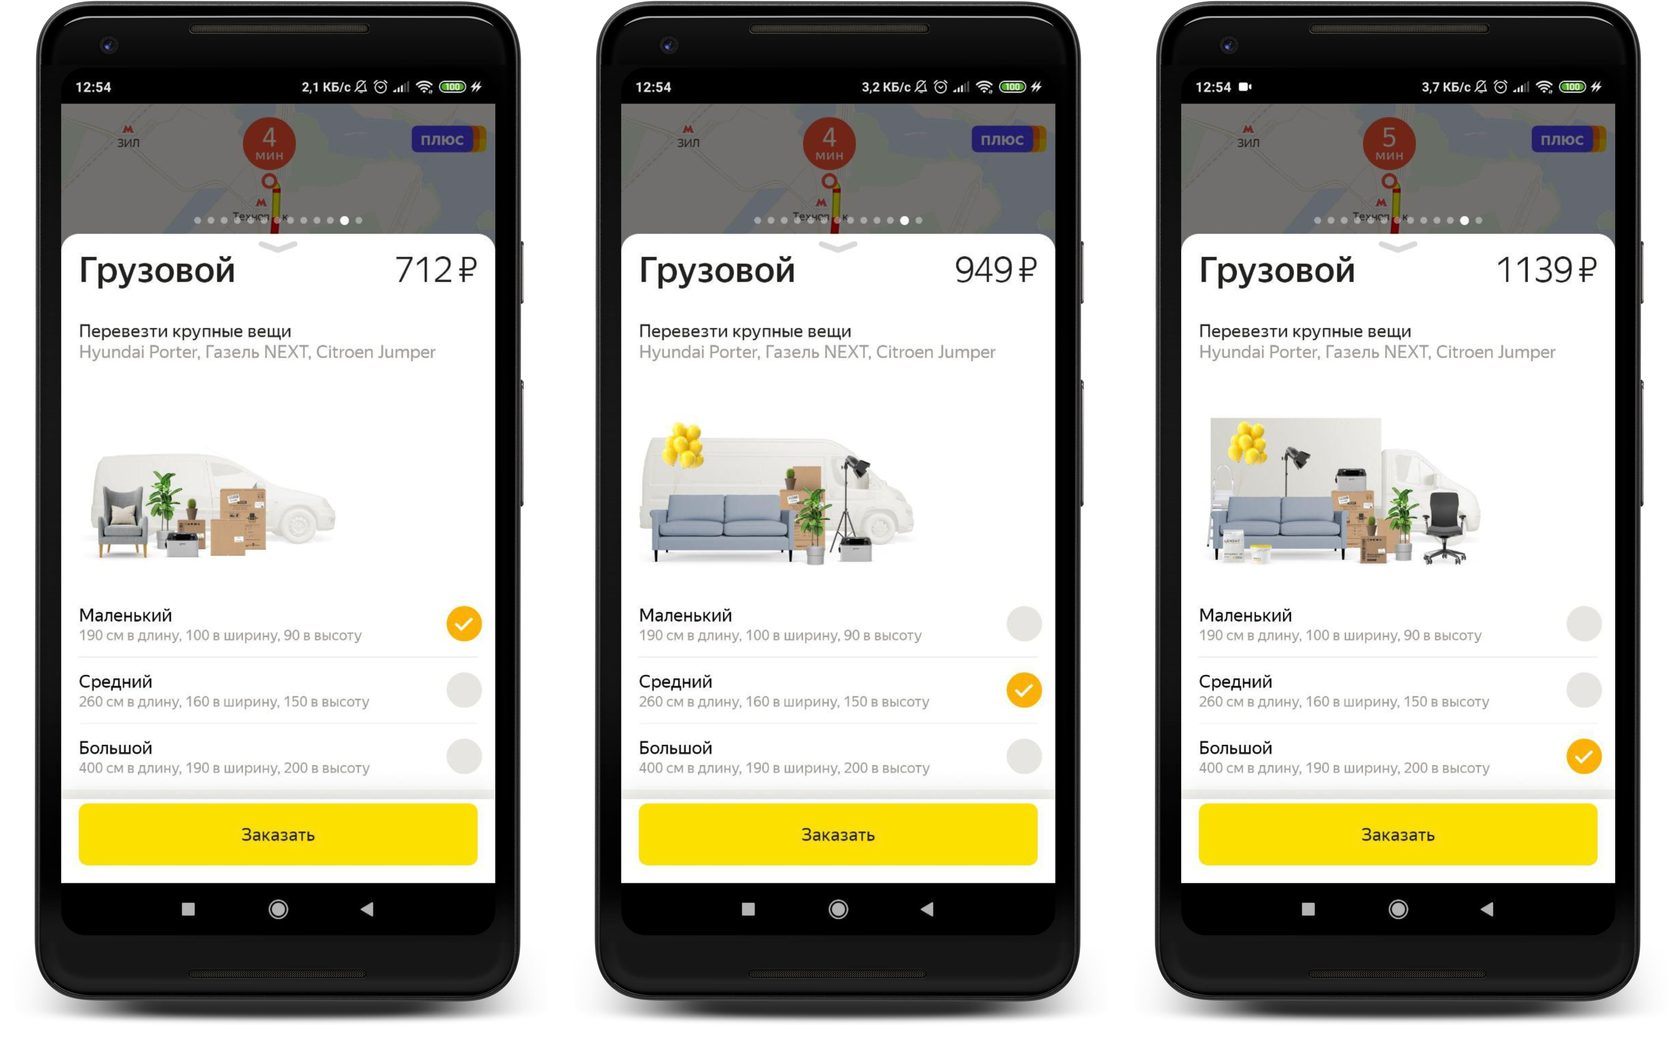 Приложение Яндекс для грузового такси